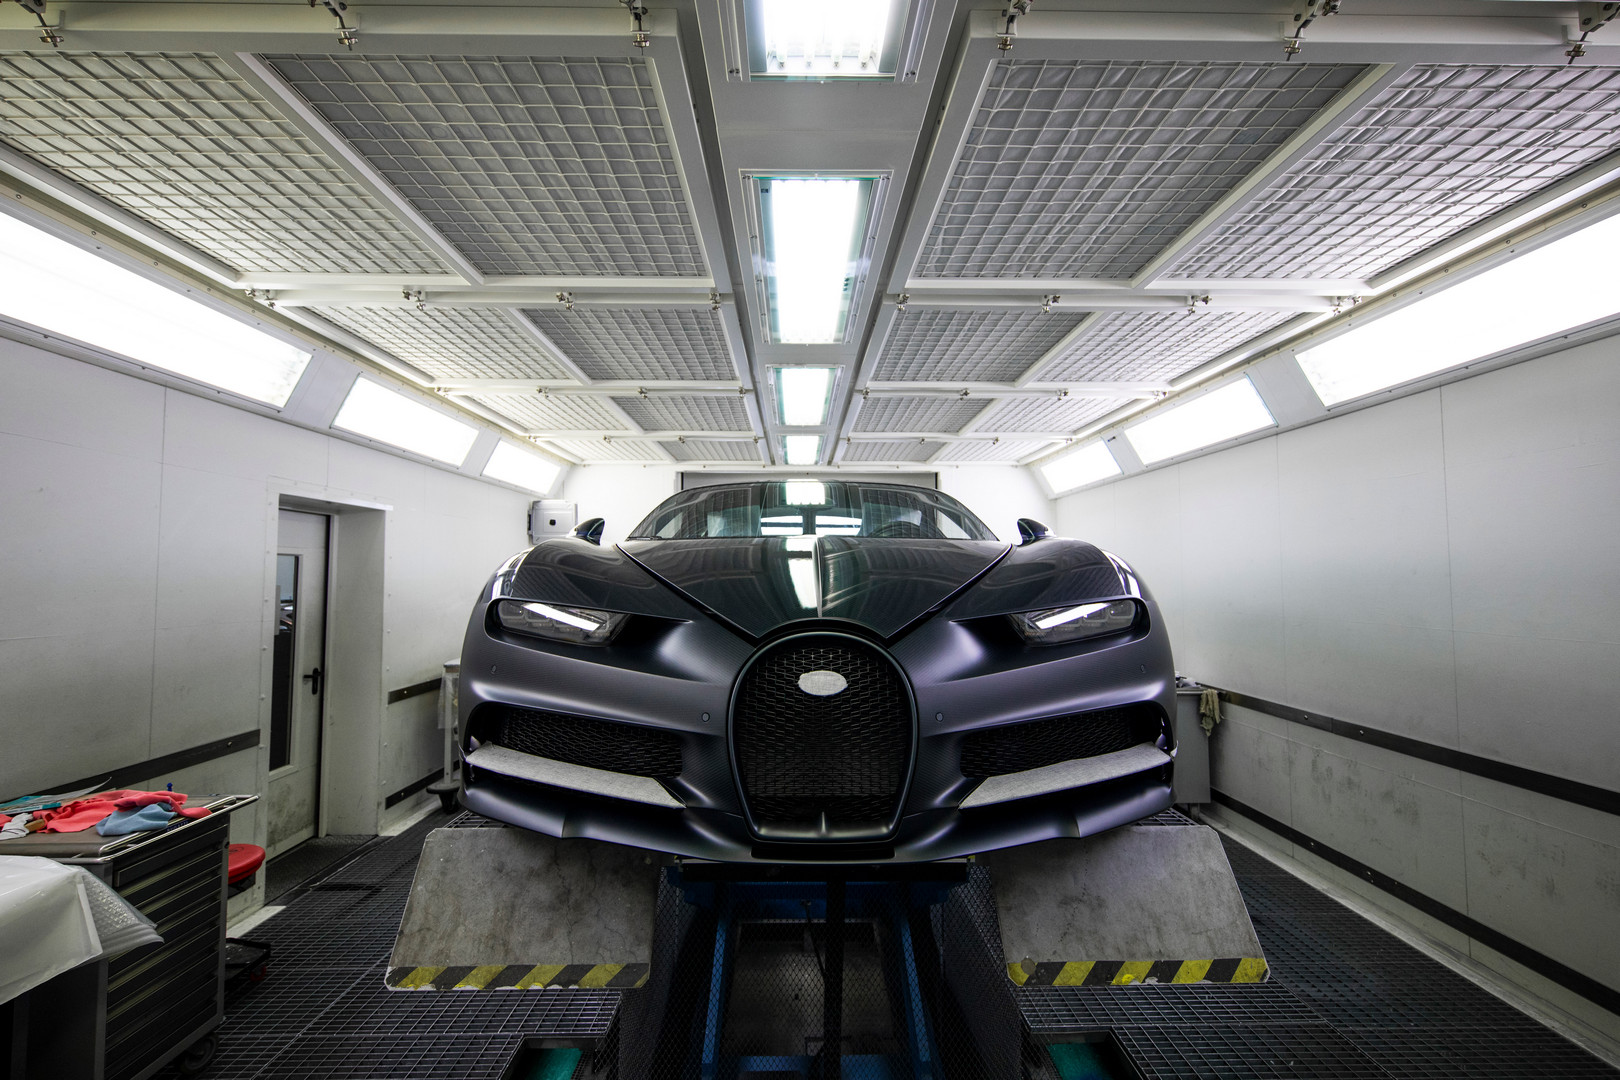 Ожидается, что производство гиперкара стоимостью 2,4 миллиона евро составит 500 автомобилей. В своем пресс-релизе Bugatti подтвердил, что 400 из этих автомобилей уже в работе. Возможно, остальные - это специальных изданий?